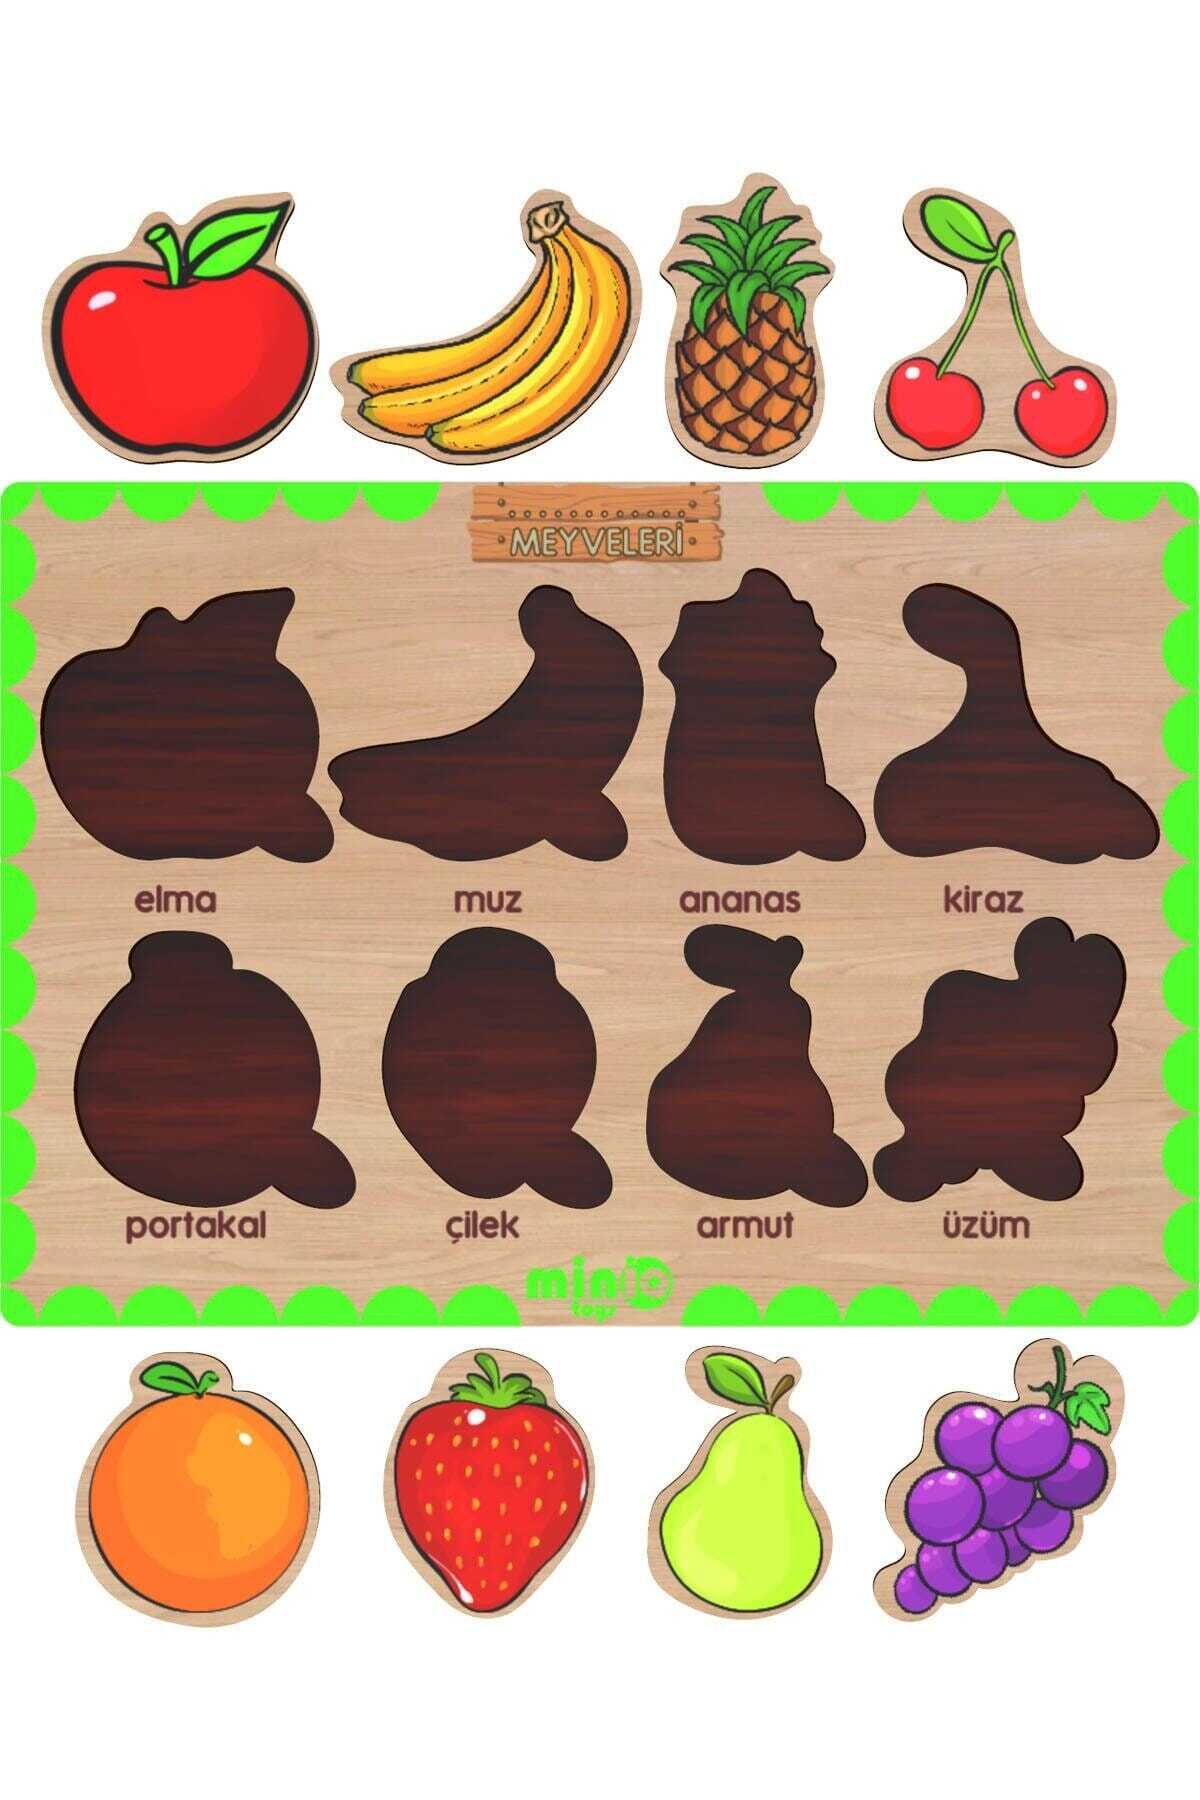 مجموعه 4 تایی پازل آموزشی کودکان چوبی حیوانات - میوه ها - اشکال هندسی - اعداد 